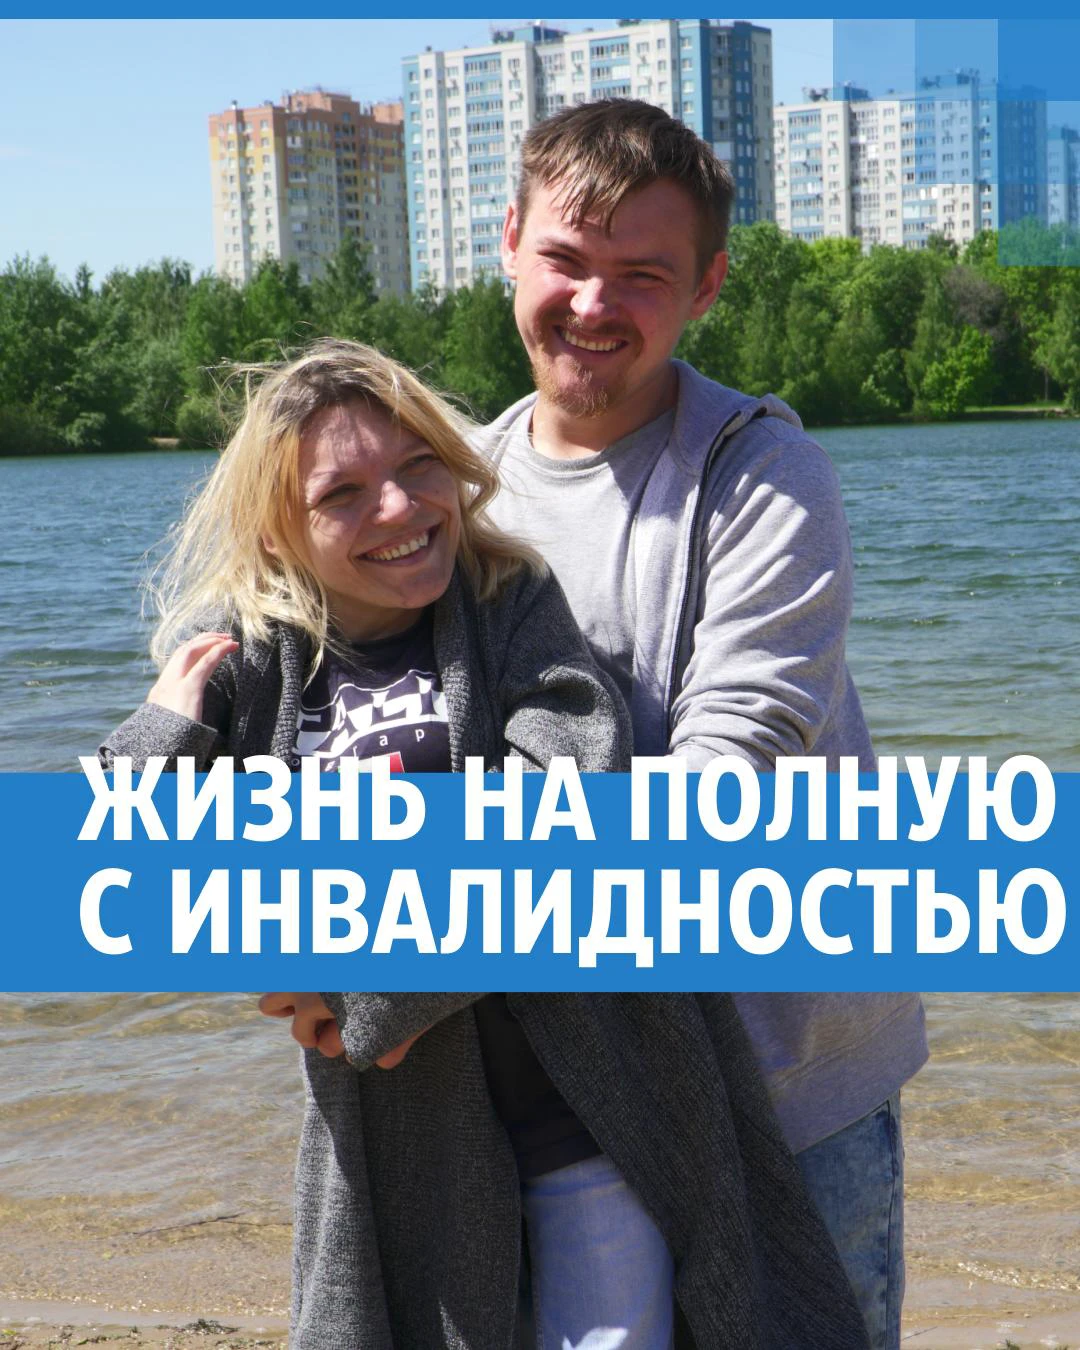 Аня и Саша Беляевы из Нижнего Новгорода, канал «Своя атмосфера»: активная  жизнь с инвалидностью - 29 июня 2022 - msk1.ru